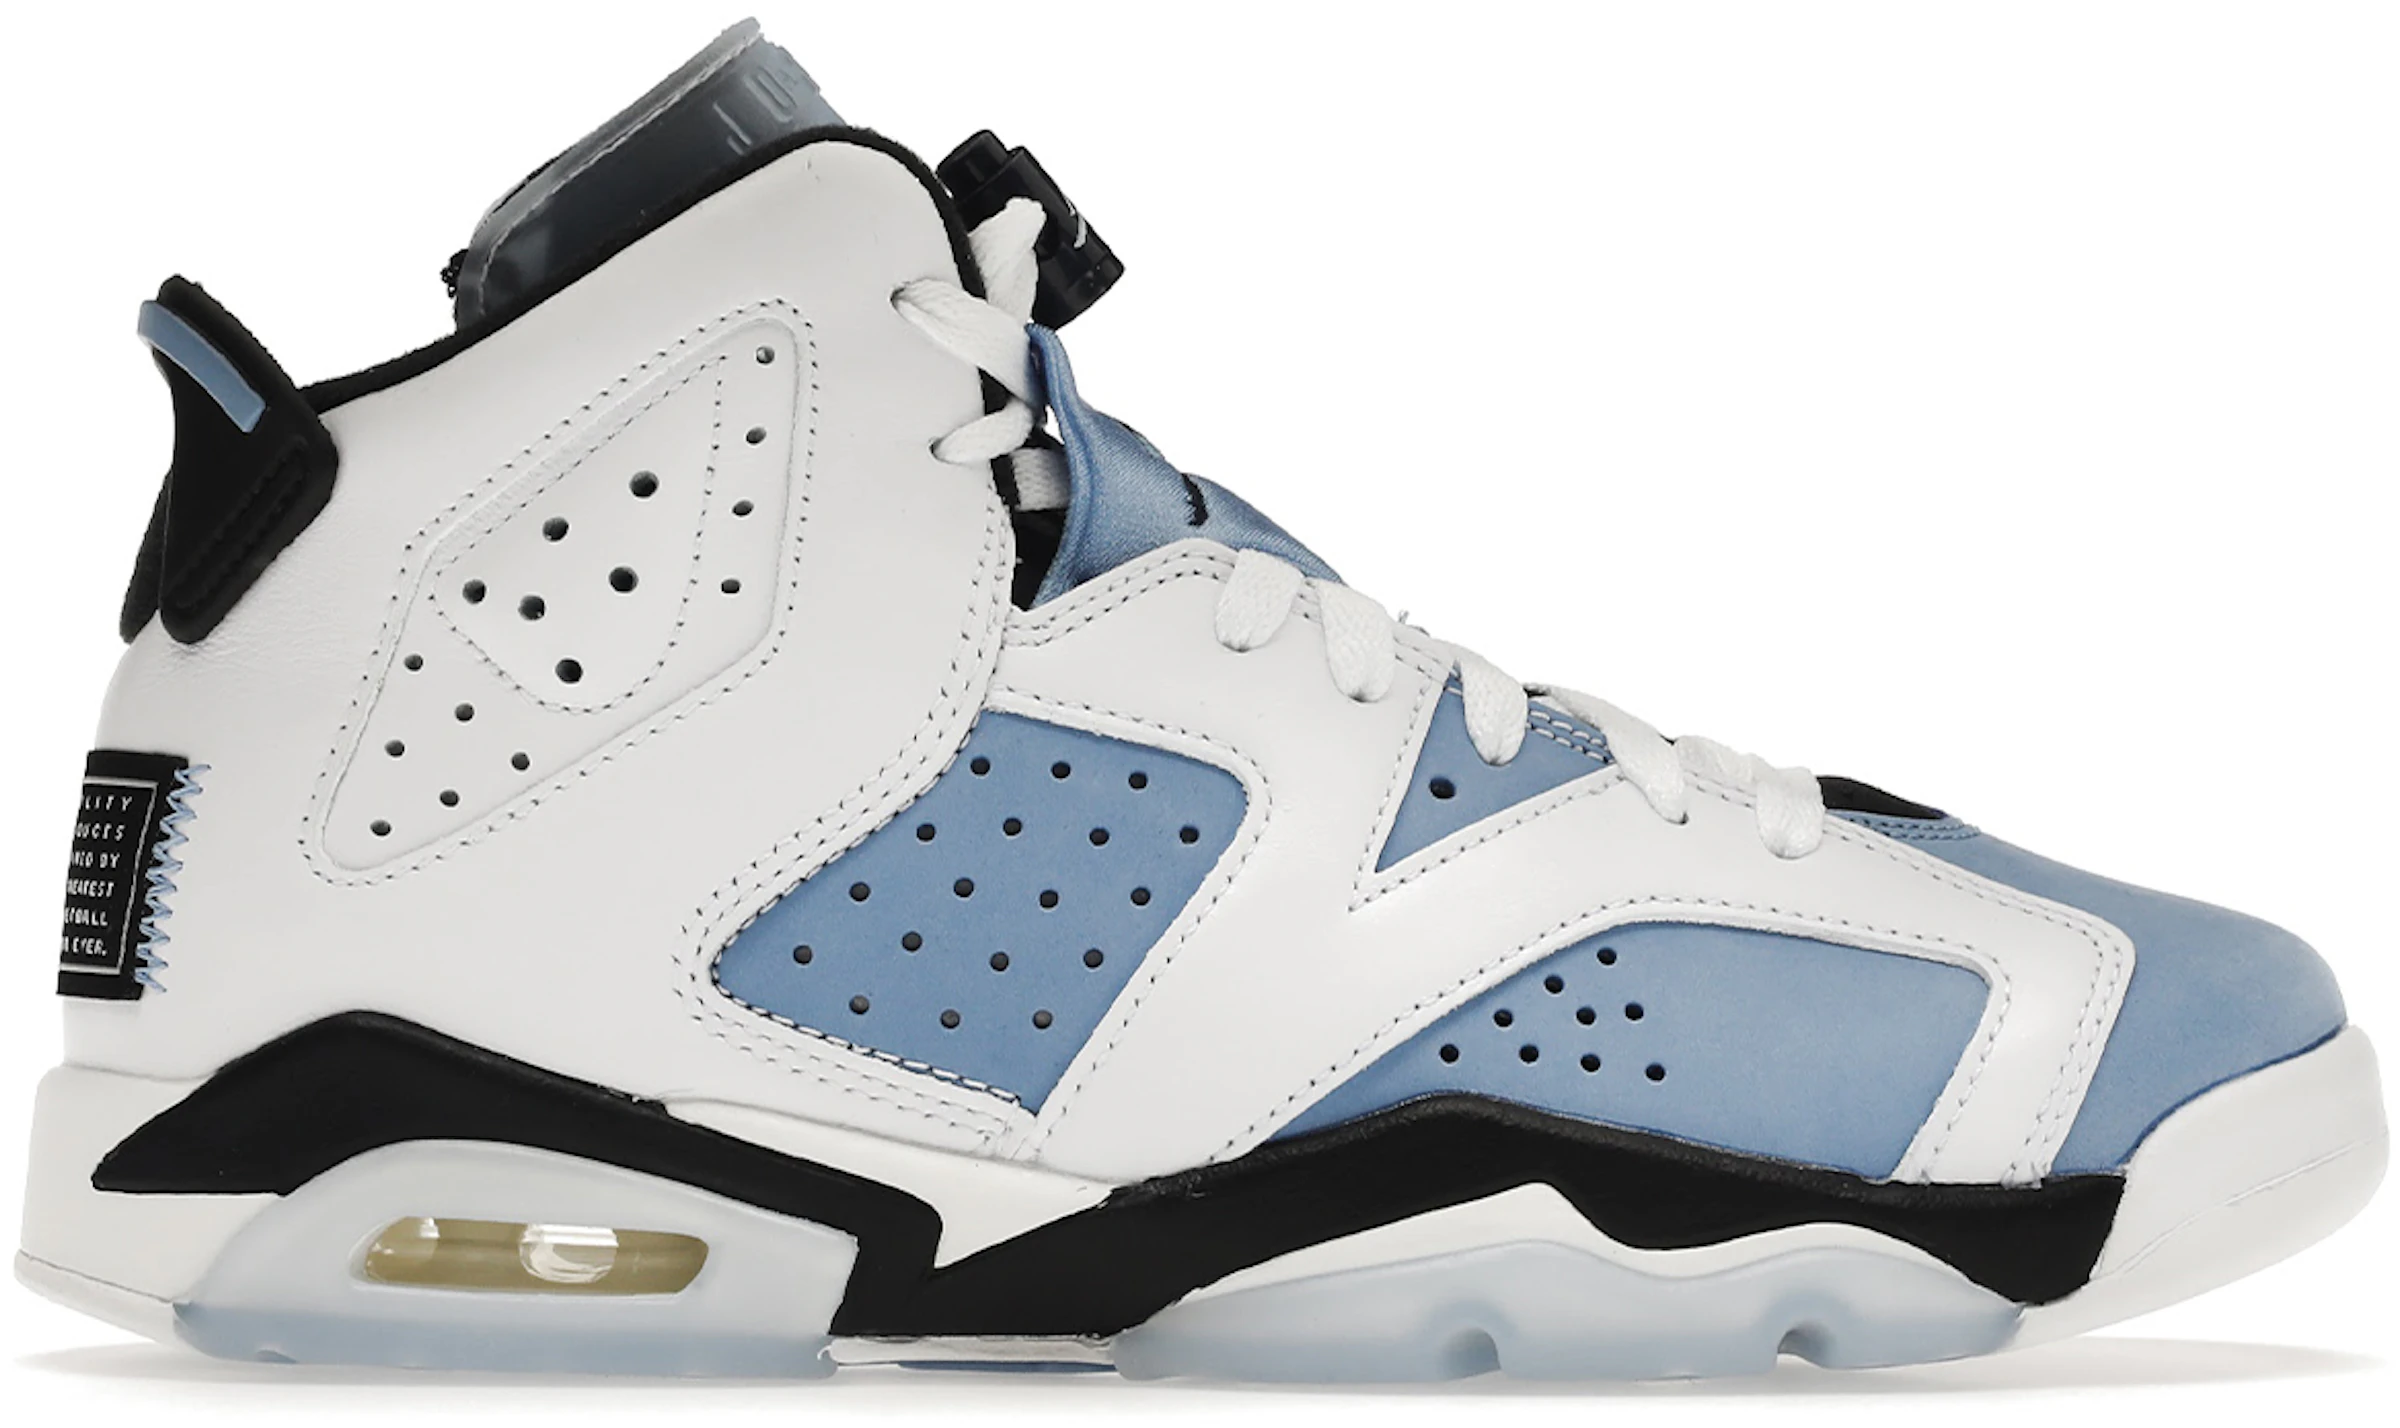 Compra Jordan 6 Calzado sneakers nuevos - StockX